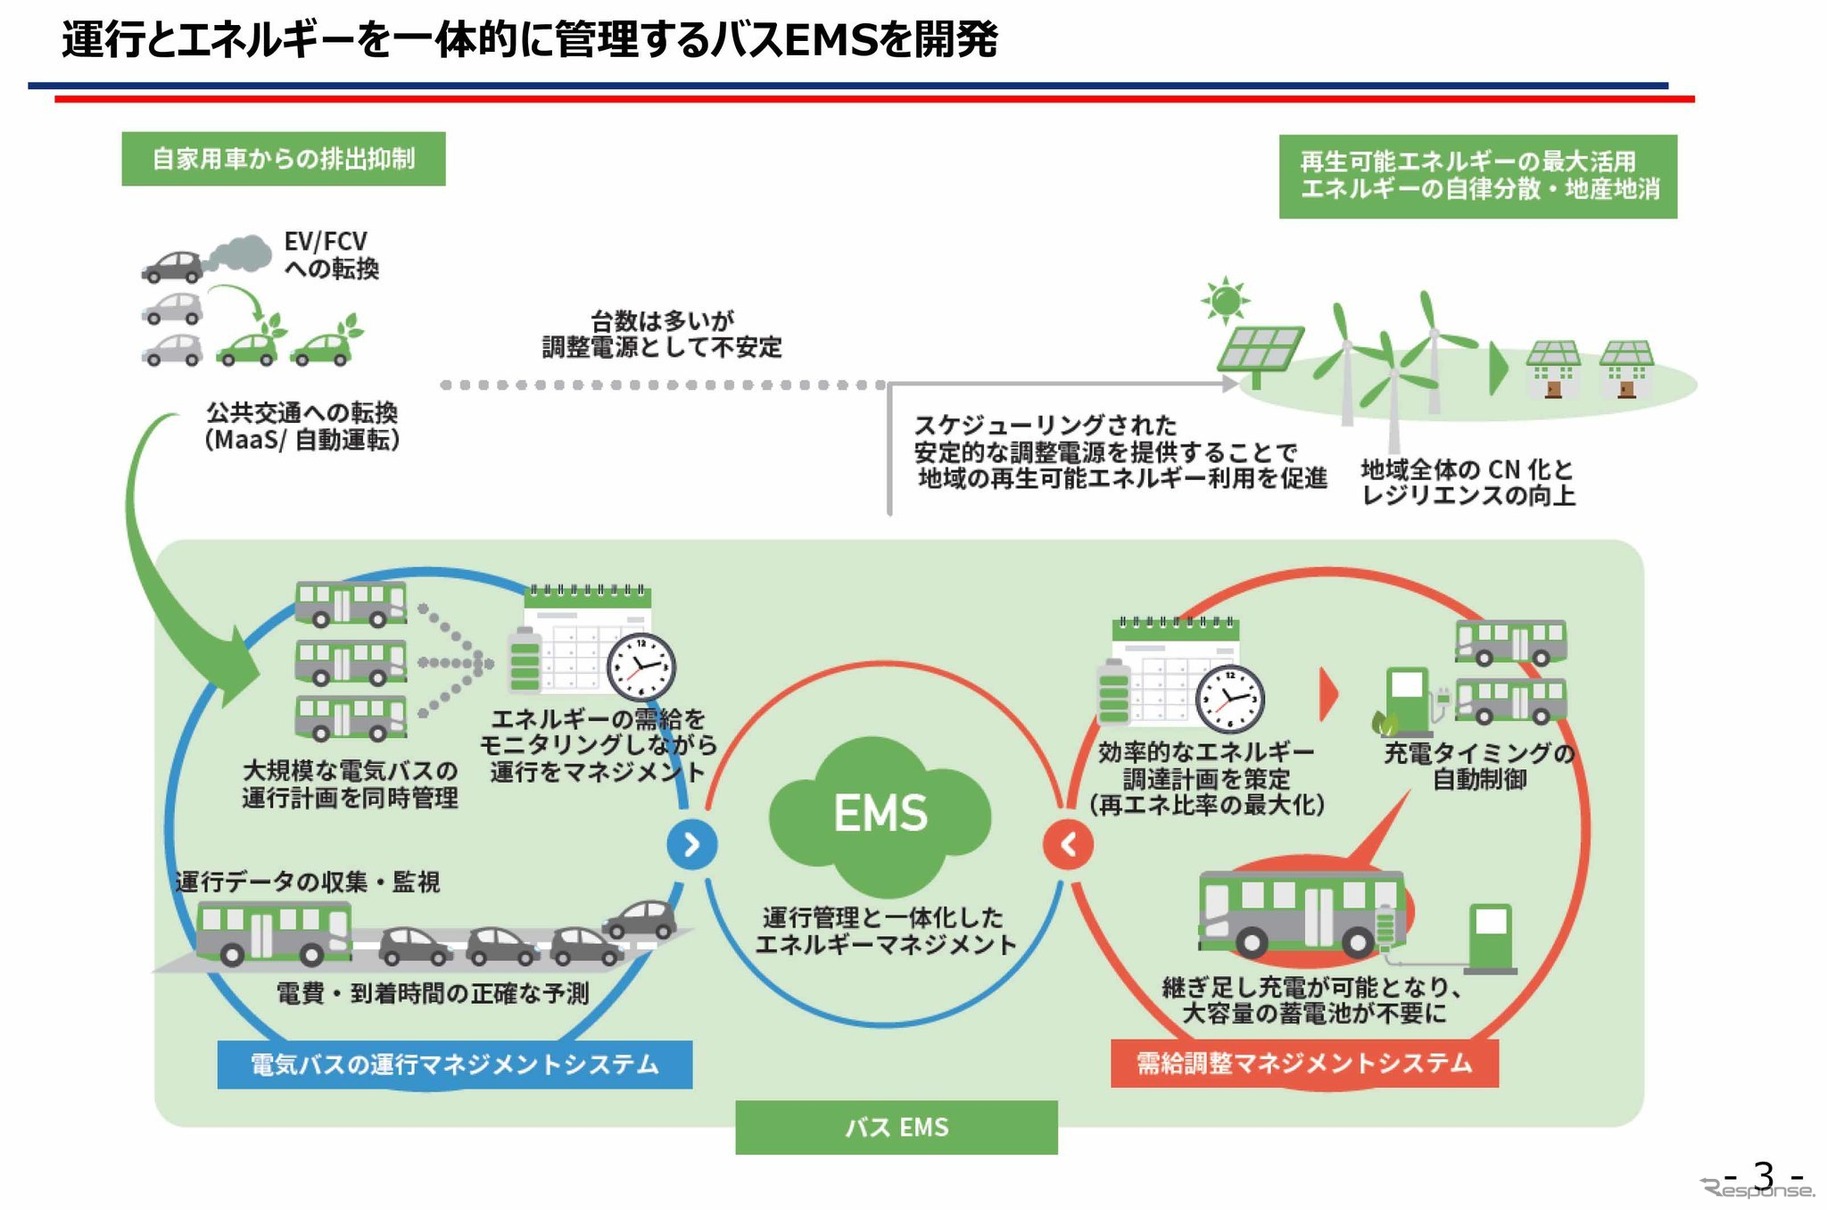 みちのりHDと東京電力HDがタッグを組んで、運行とエネルギーを一体的に管理するために新たに開発されたのが「バスEMS」